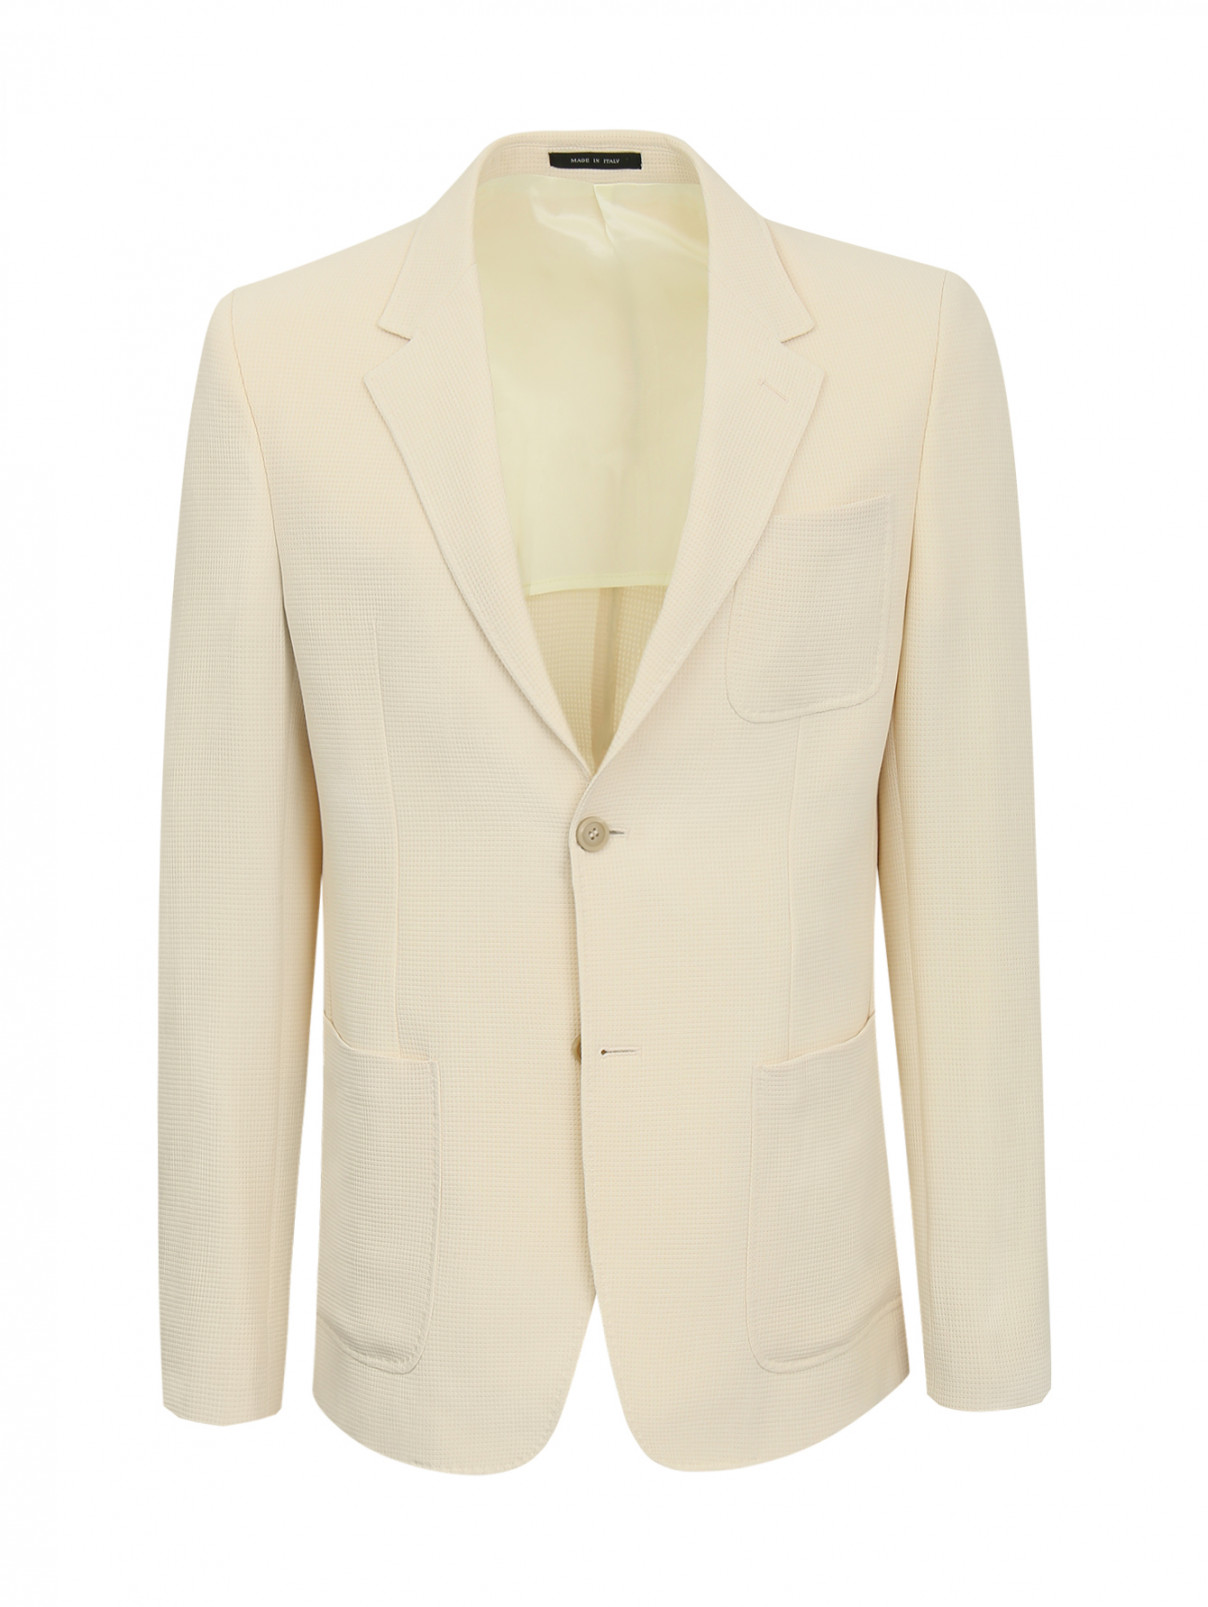 Пиджак однобортный из фактурной ткани Emporio Armani  –  Общий вид  – Цвет:  Бежевый